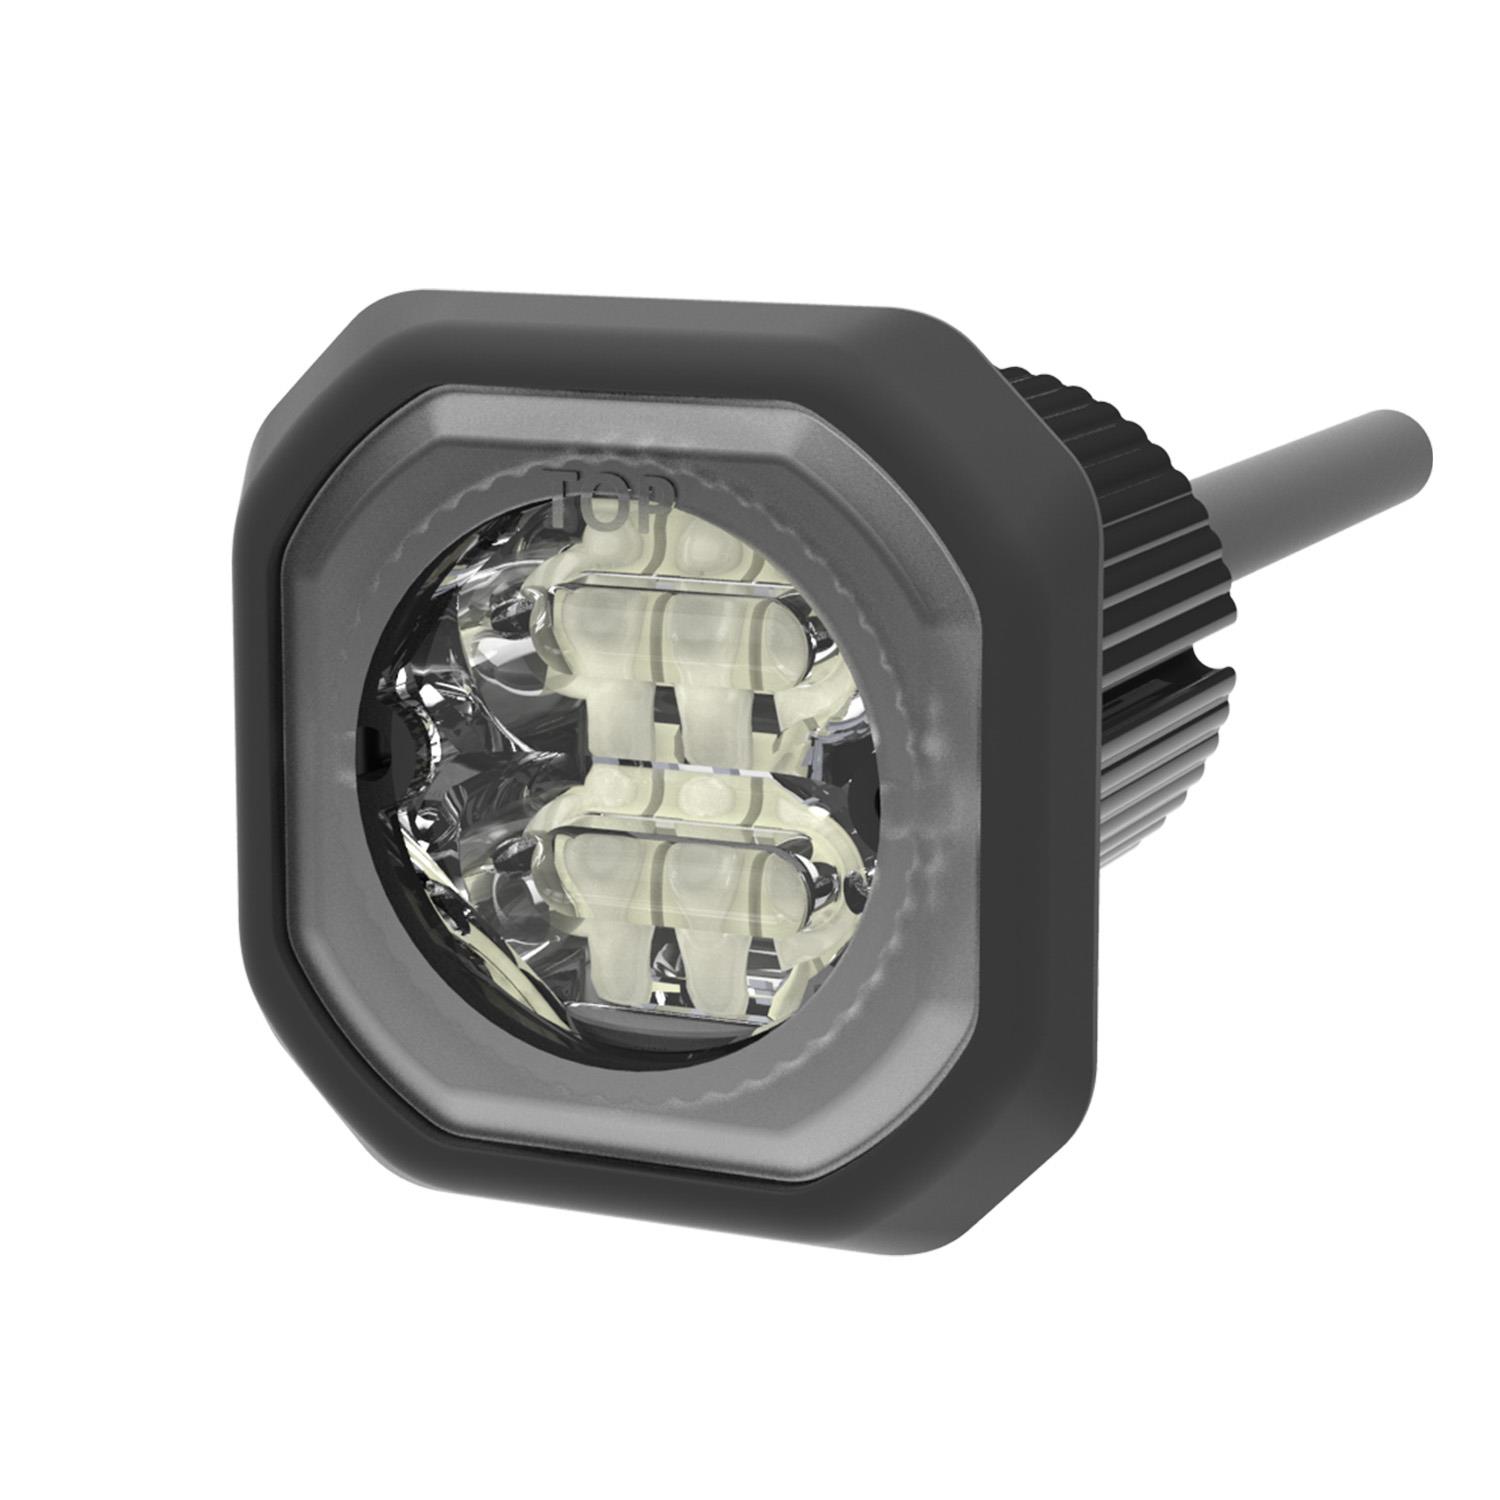 Hide-A-LED Directional LED Warning Light, Single Color, 12-24VDC